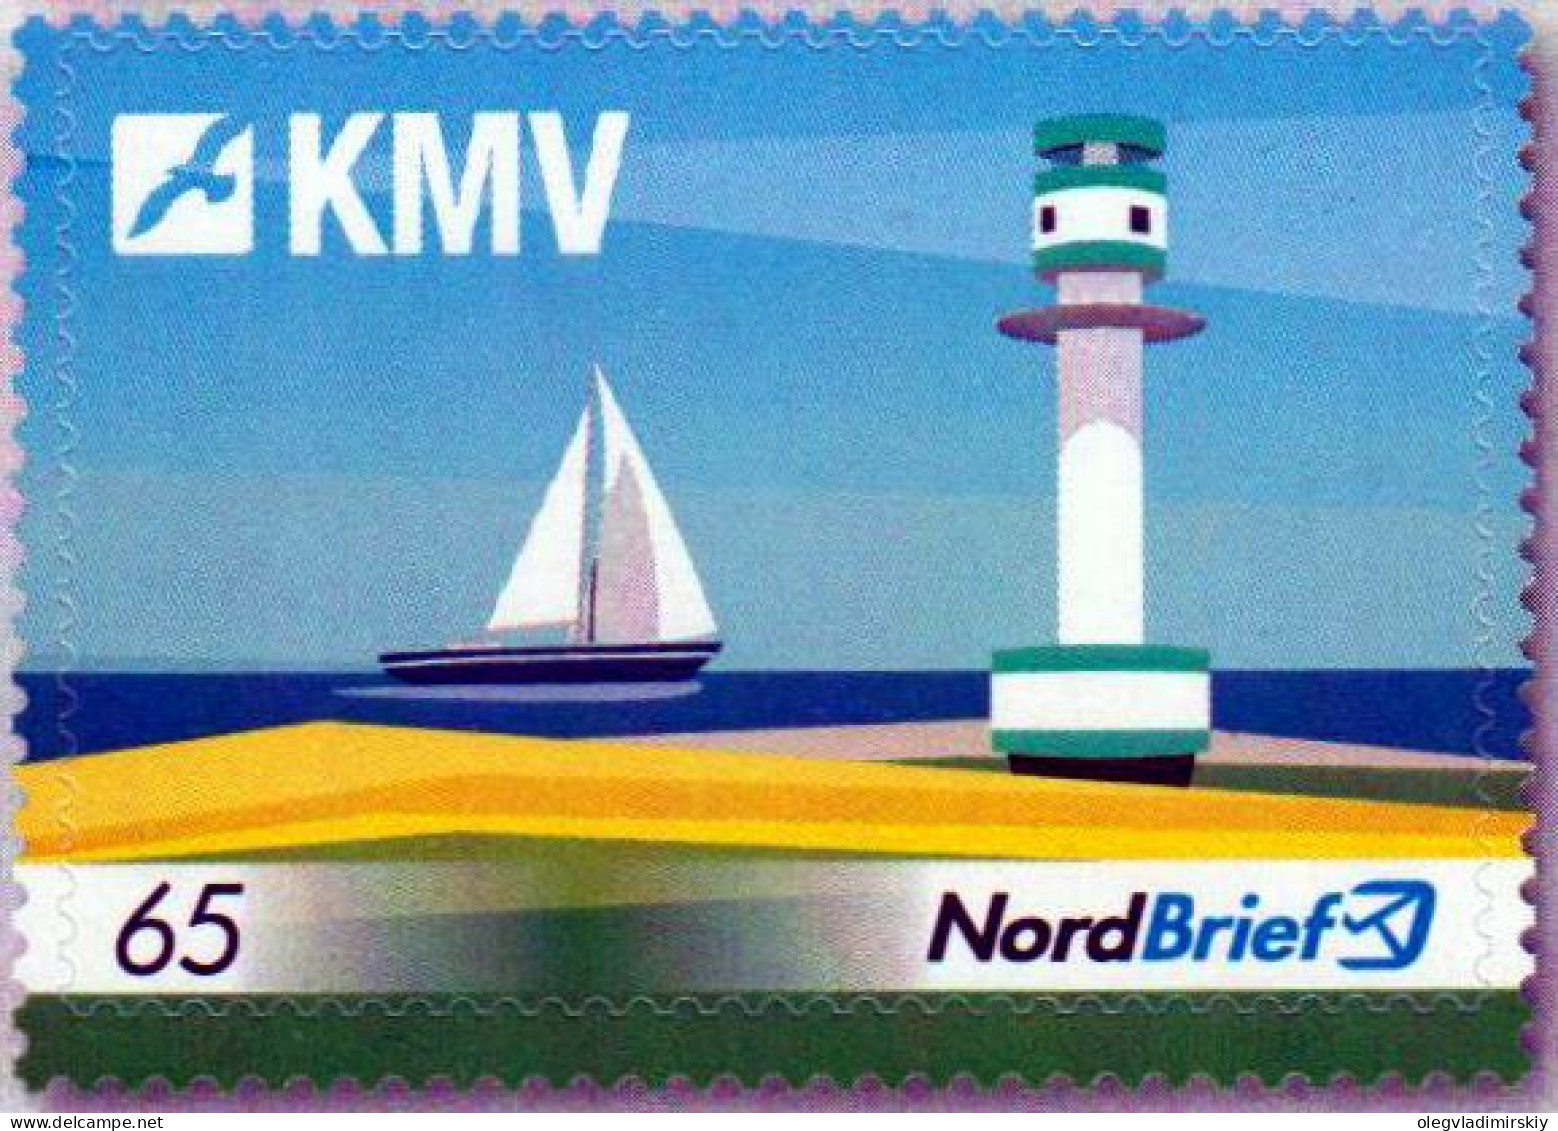 Germany Deutschland Allemagne 2017 Kiel Magazine Publisher Lighthouse Sailship NordBrief Stamp MNH - Privées & Locales